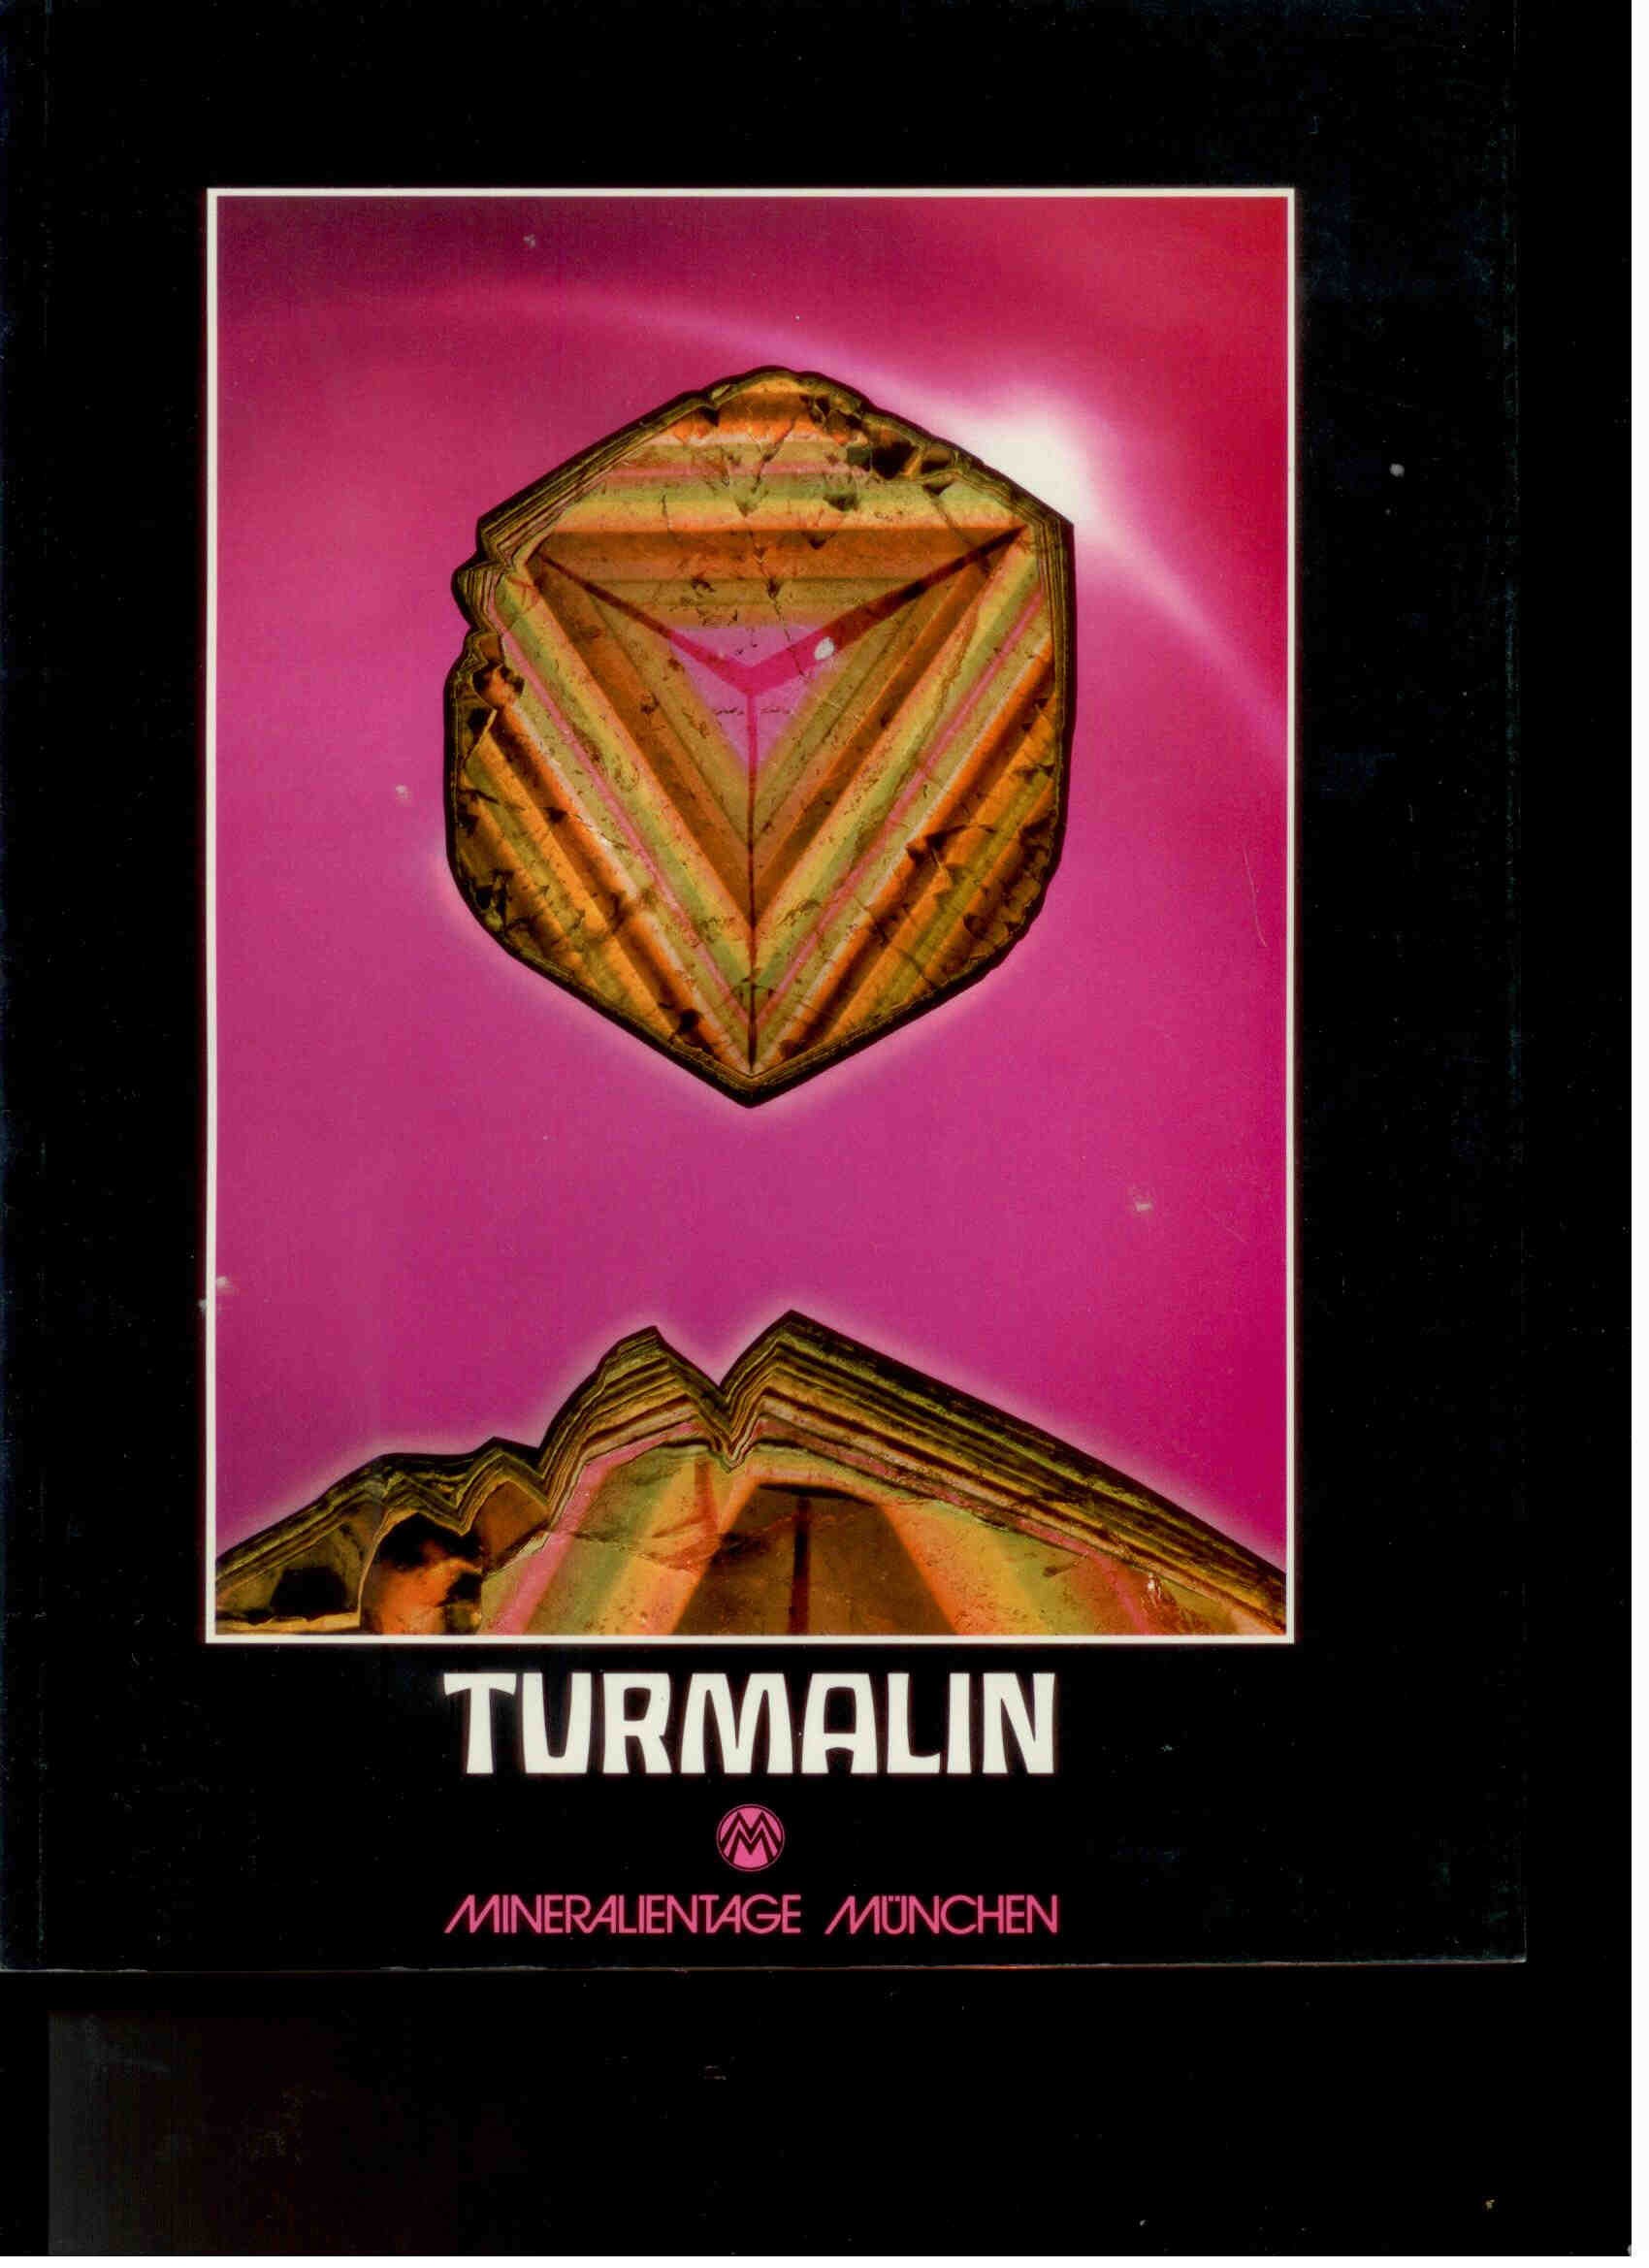 Münchner Mineralientage 1985 - TURMALIN